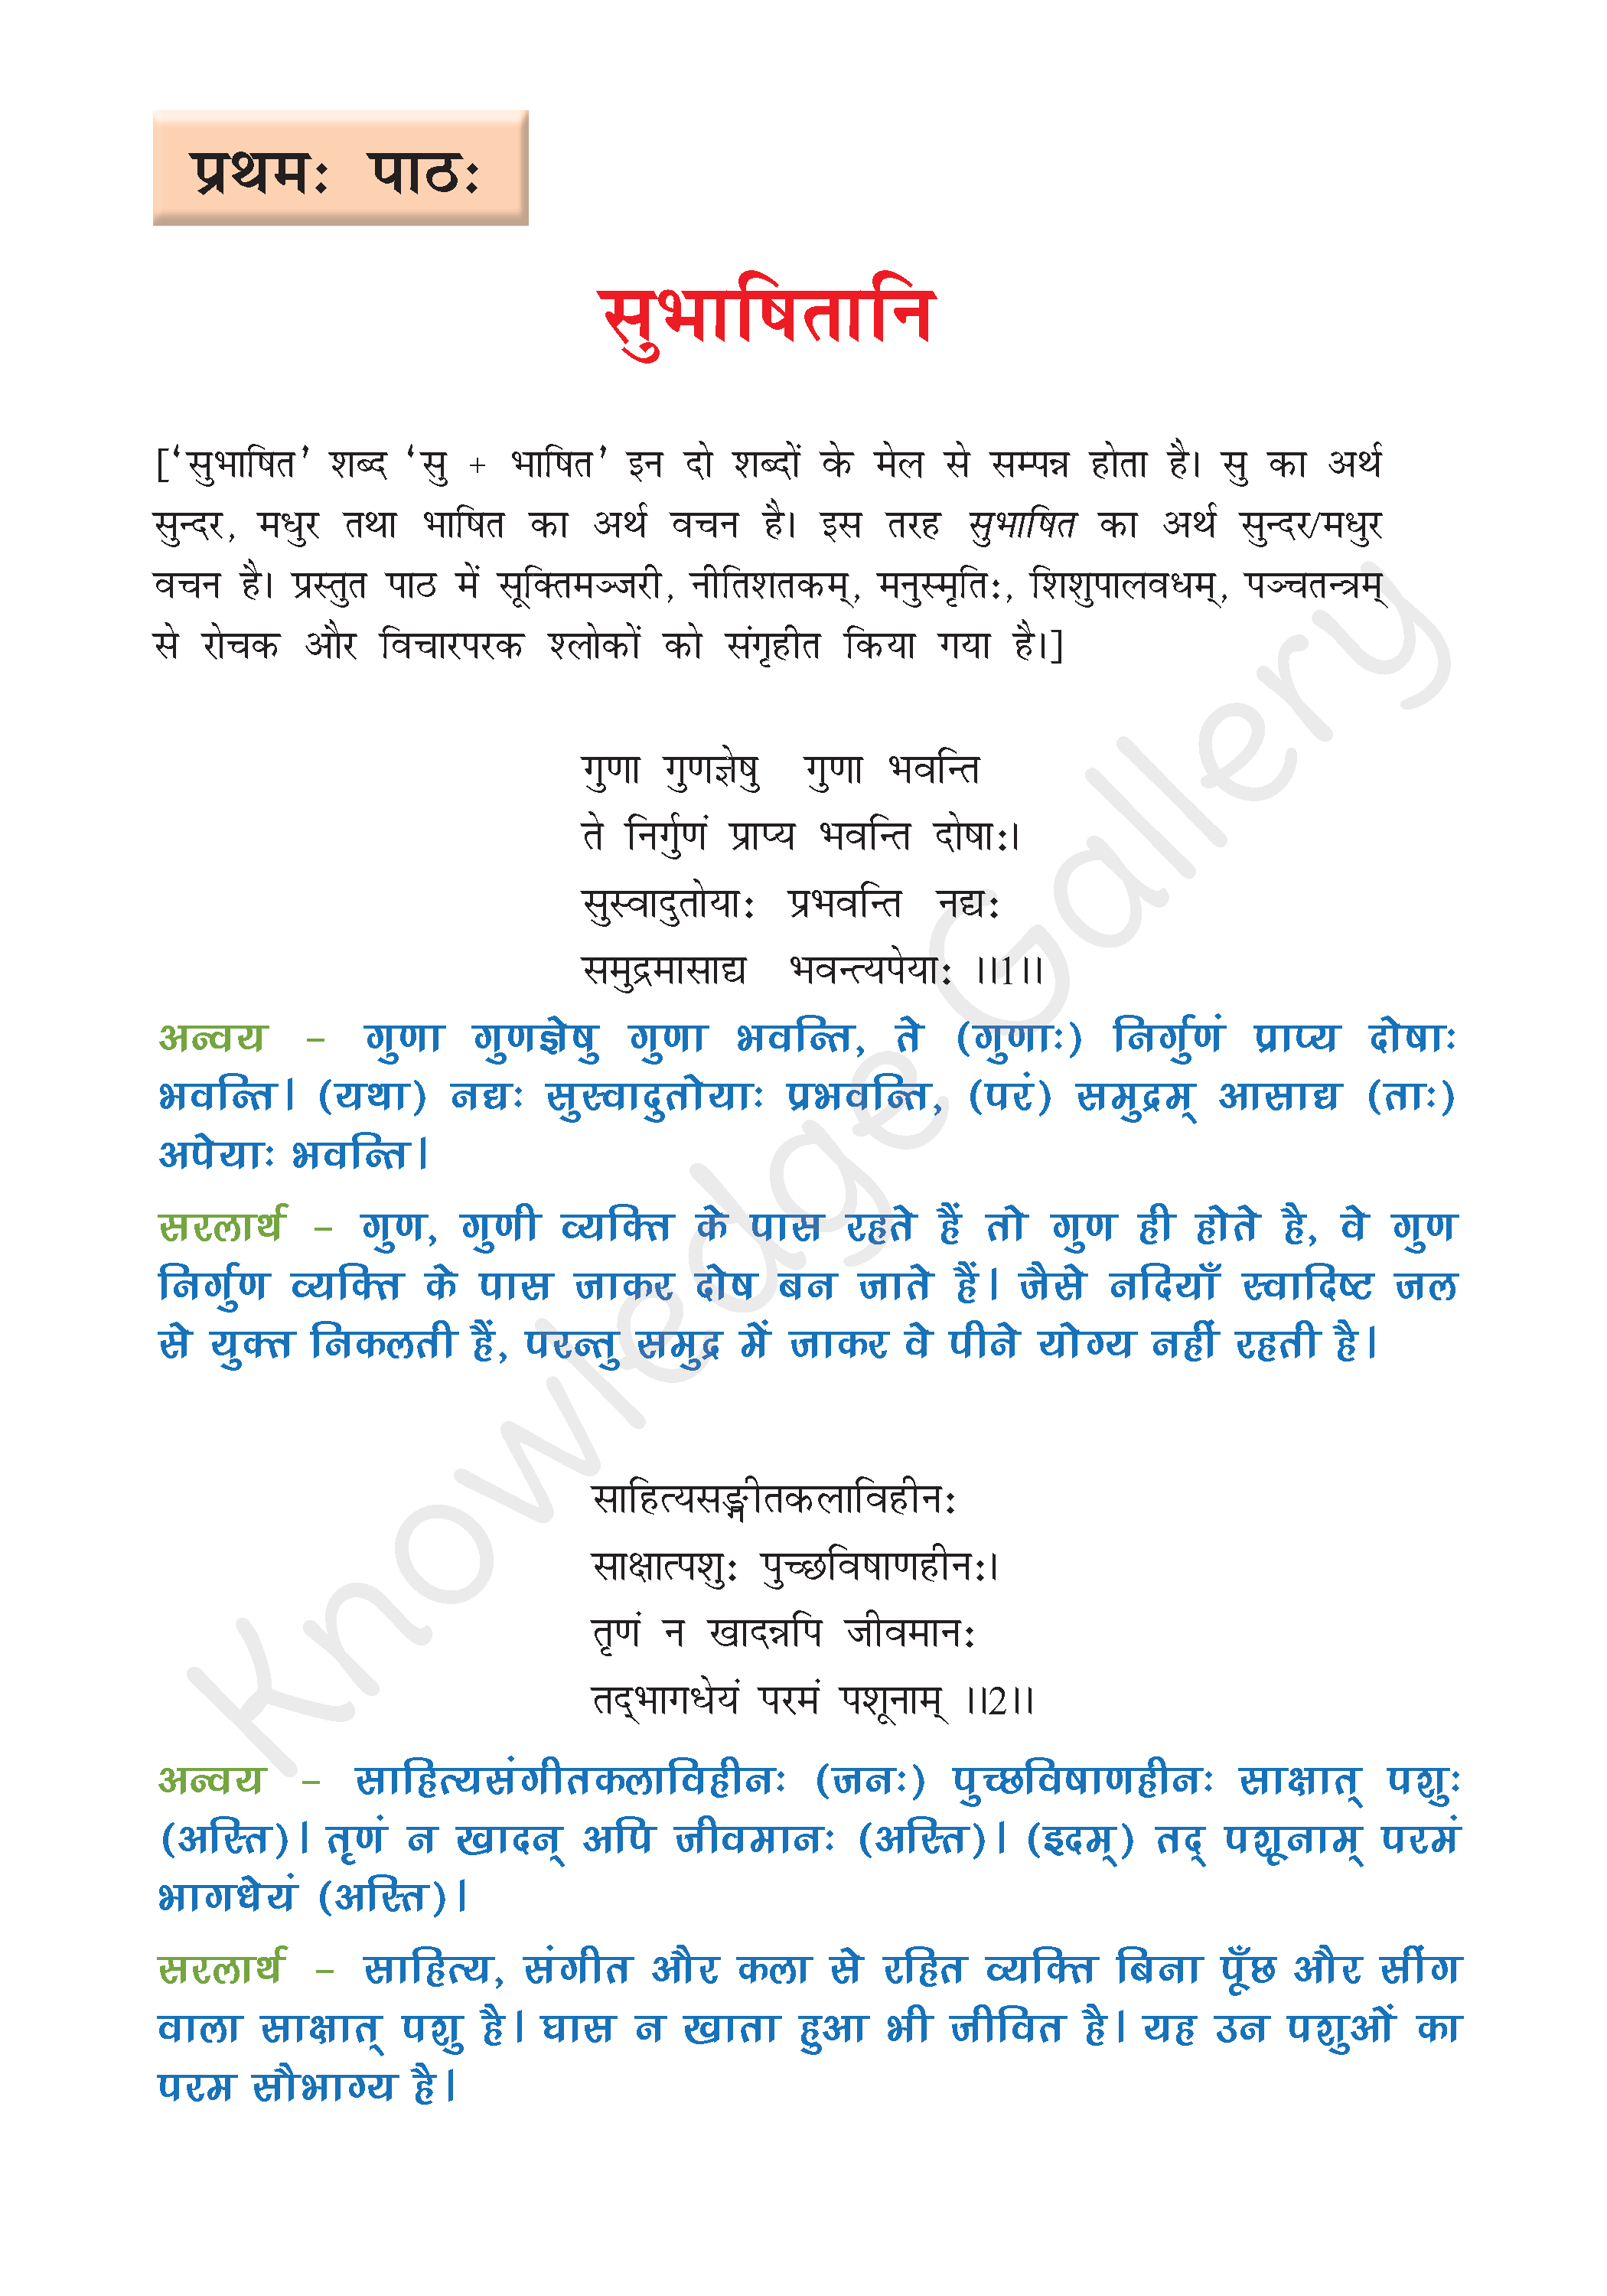 NCERT Solution For Class 8 Sanskrit Chapter 1 part 1